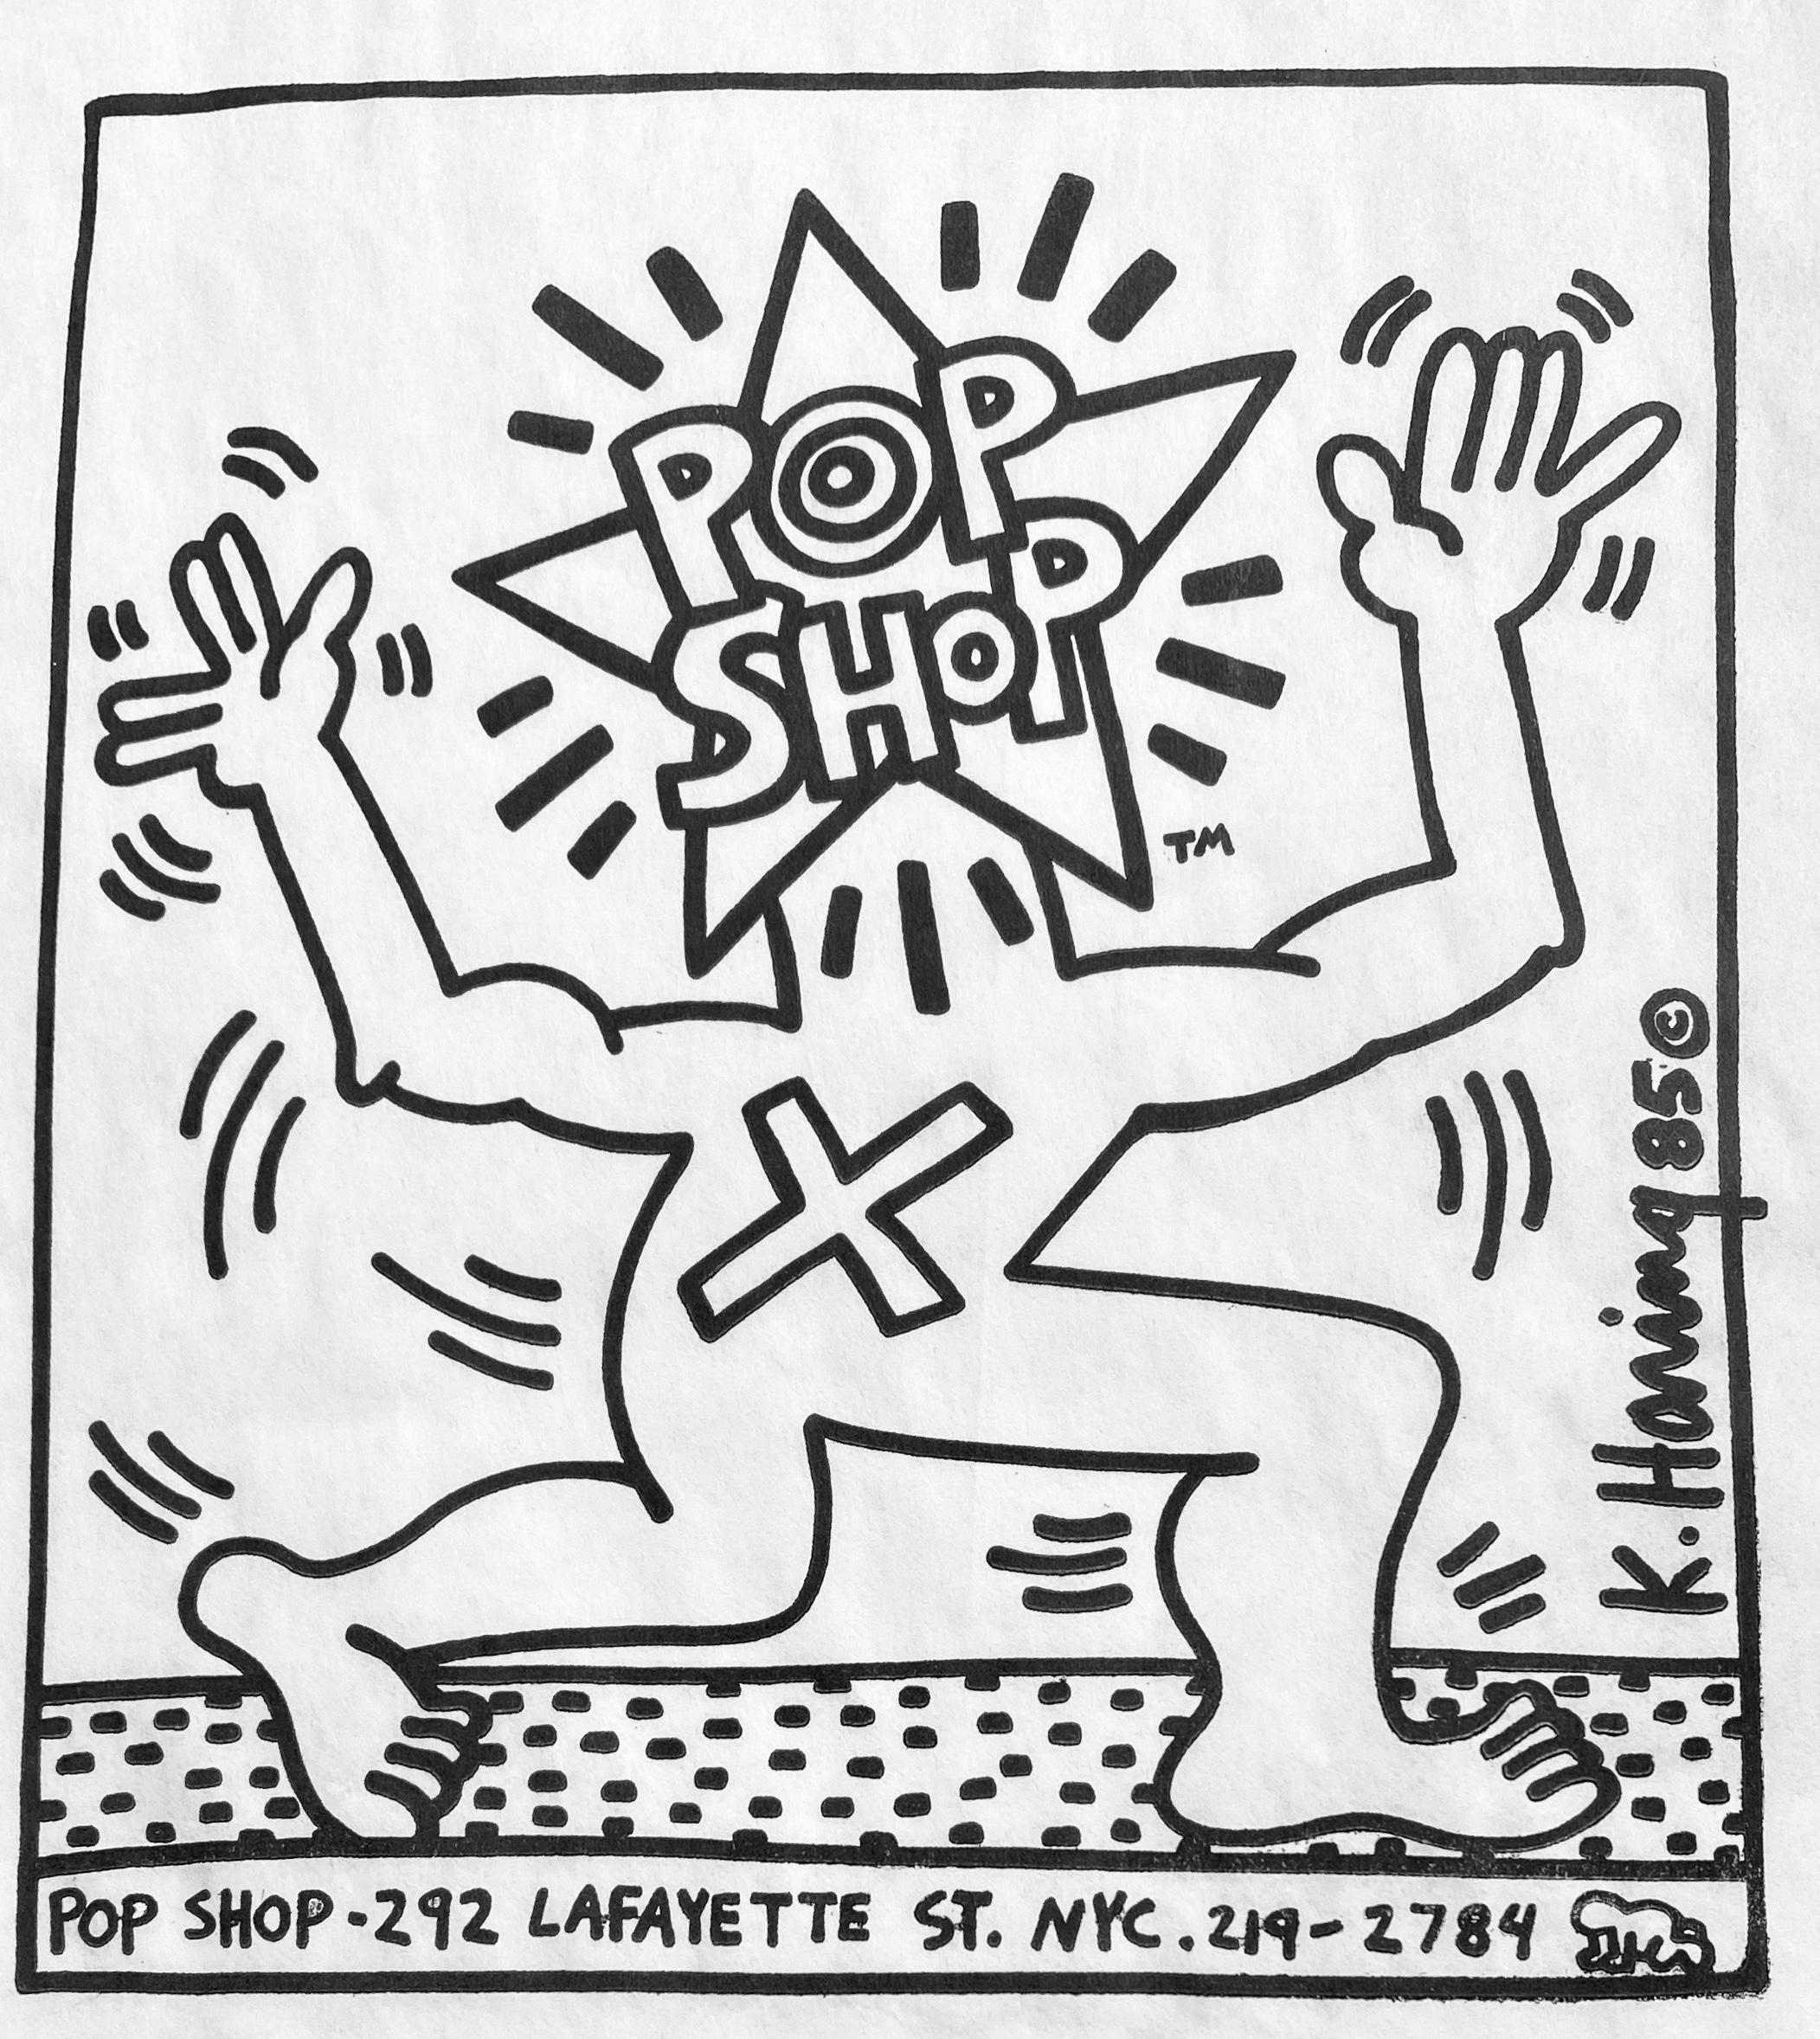 Keith Haring Pop Shop :
Vintage original Keith Haring 1980 Pop Shop sac conçu par Haring pour être utilisé dans son célèbre magasin de New York. Un classique de la collection Pop Shop de Keith Haring qui se prête bien à l'encadrement. 

Support :